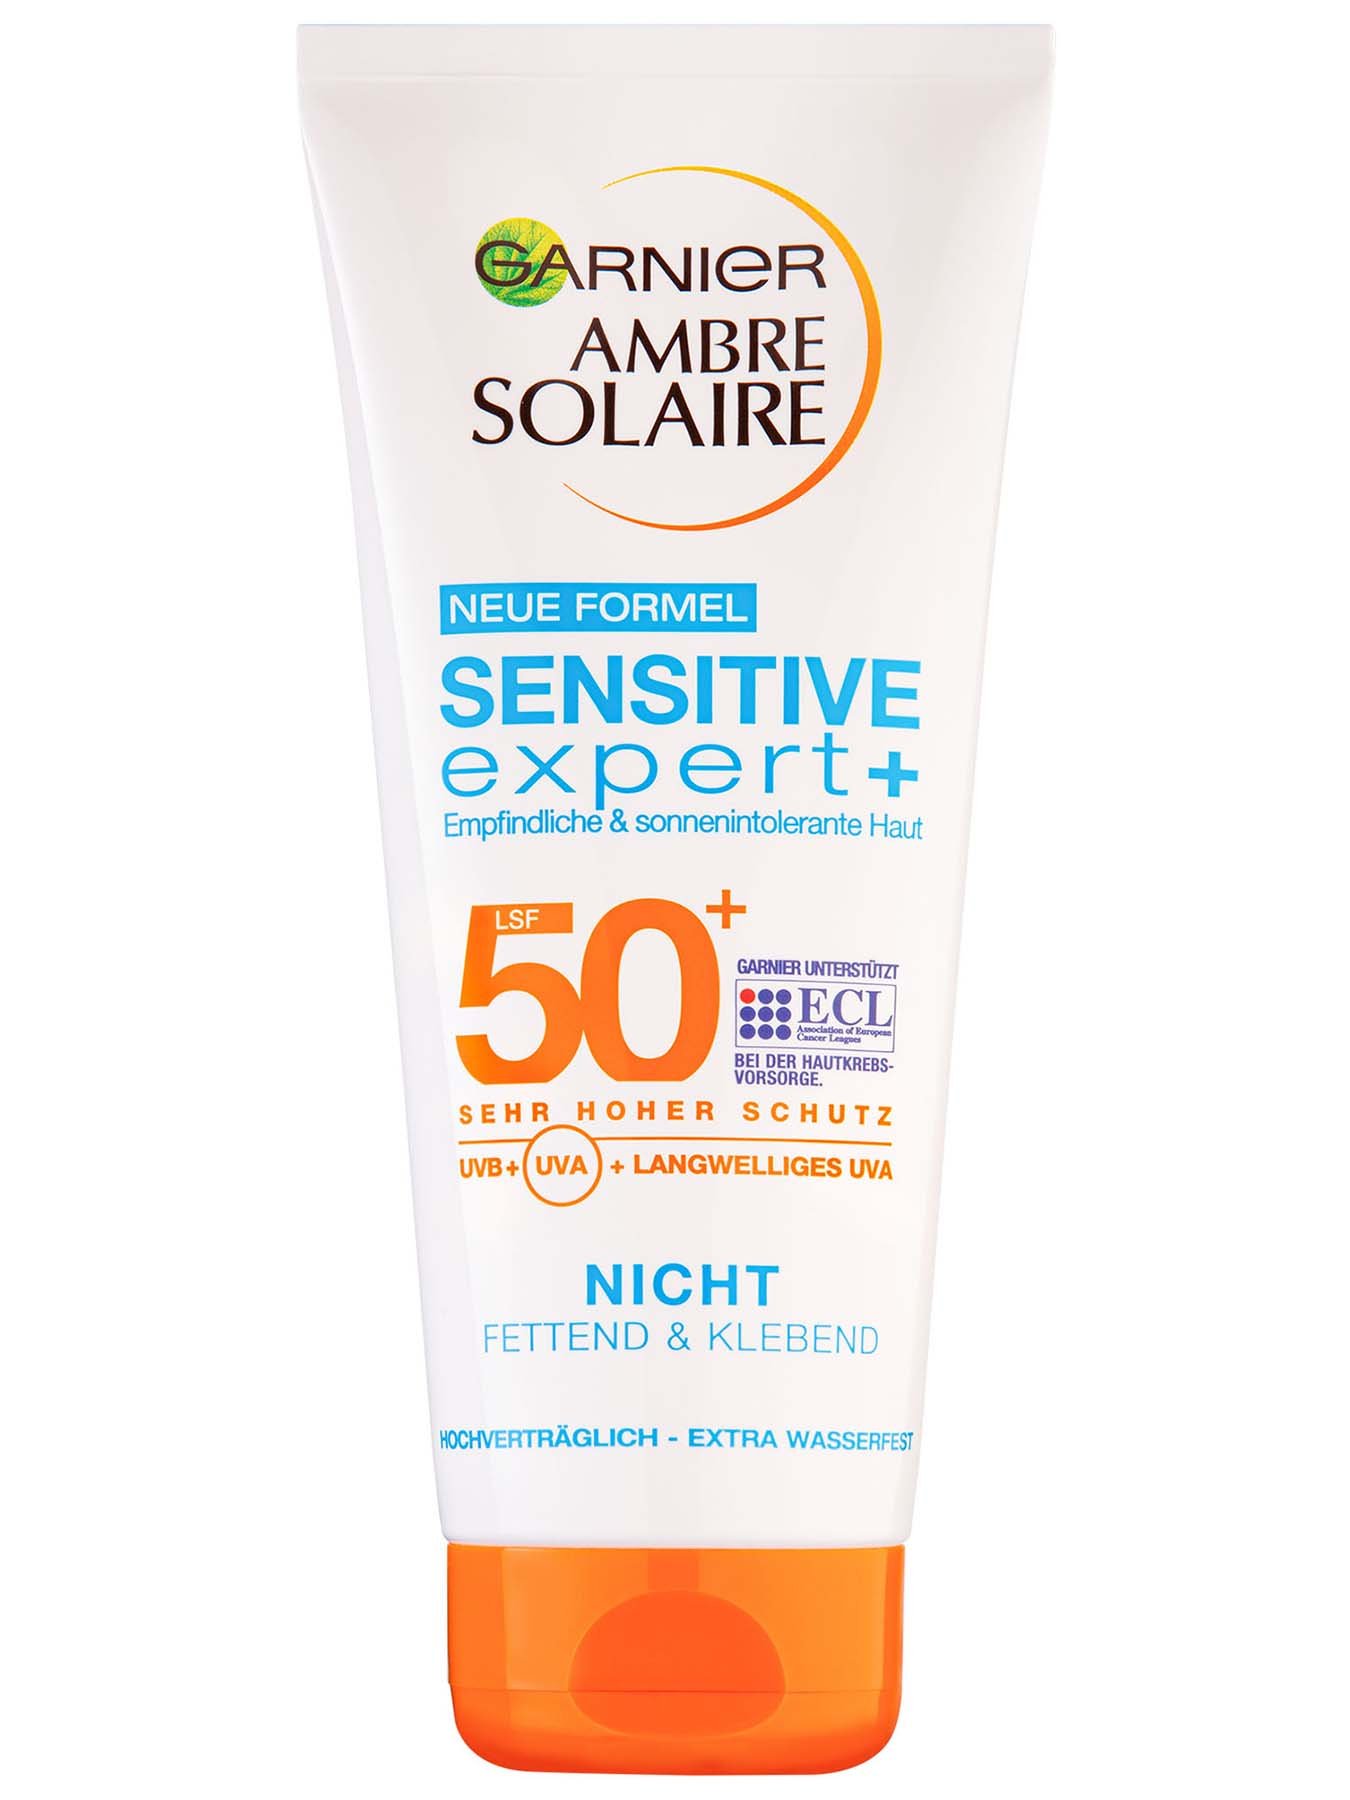 50+ Sensitive Solaire expert LSF Ambre Garnier Sonnencreme